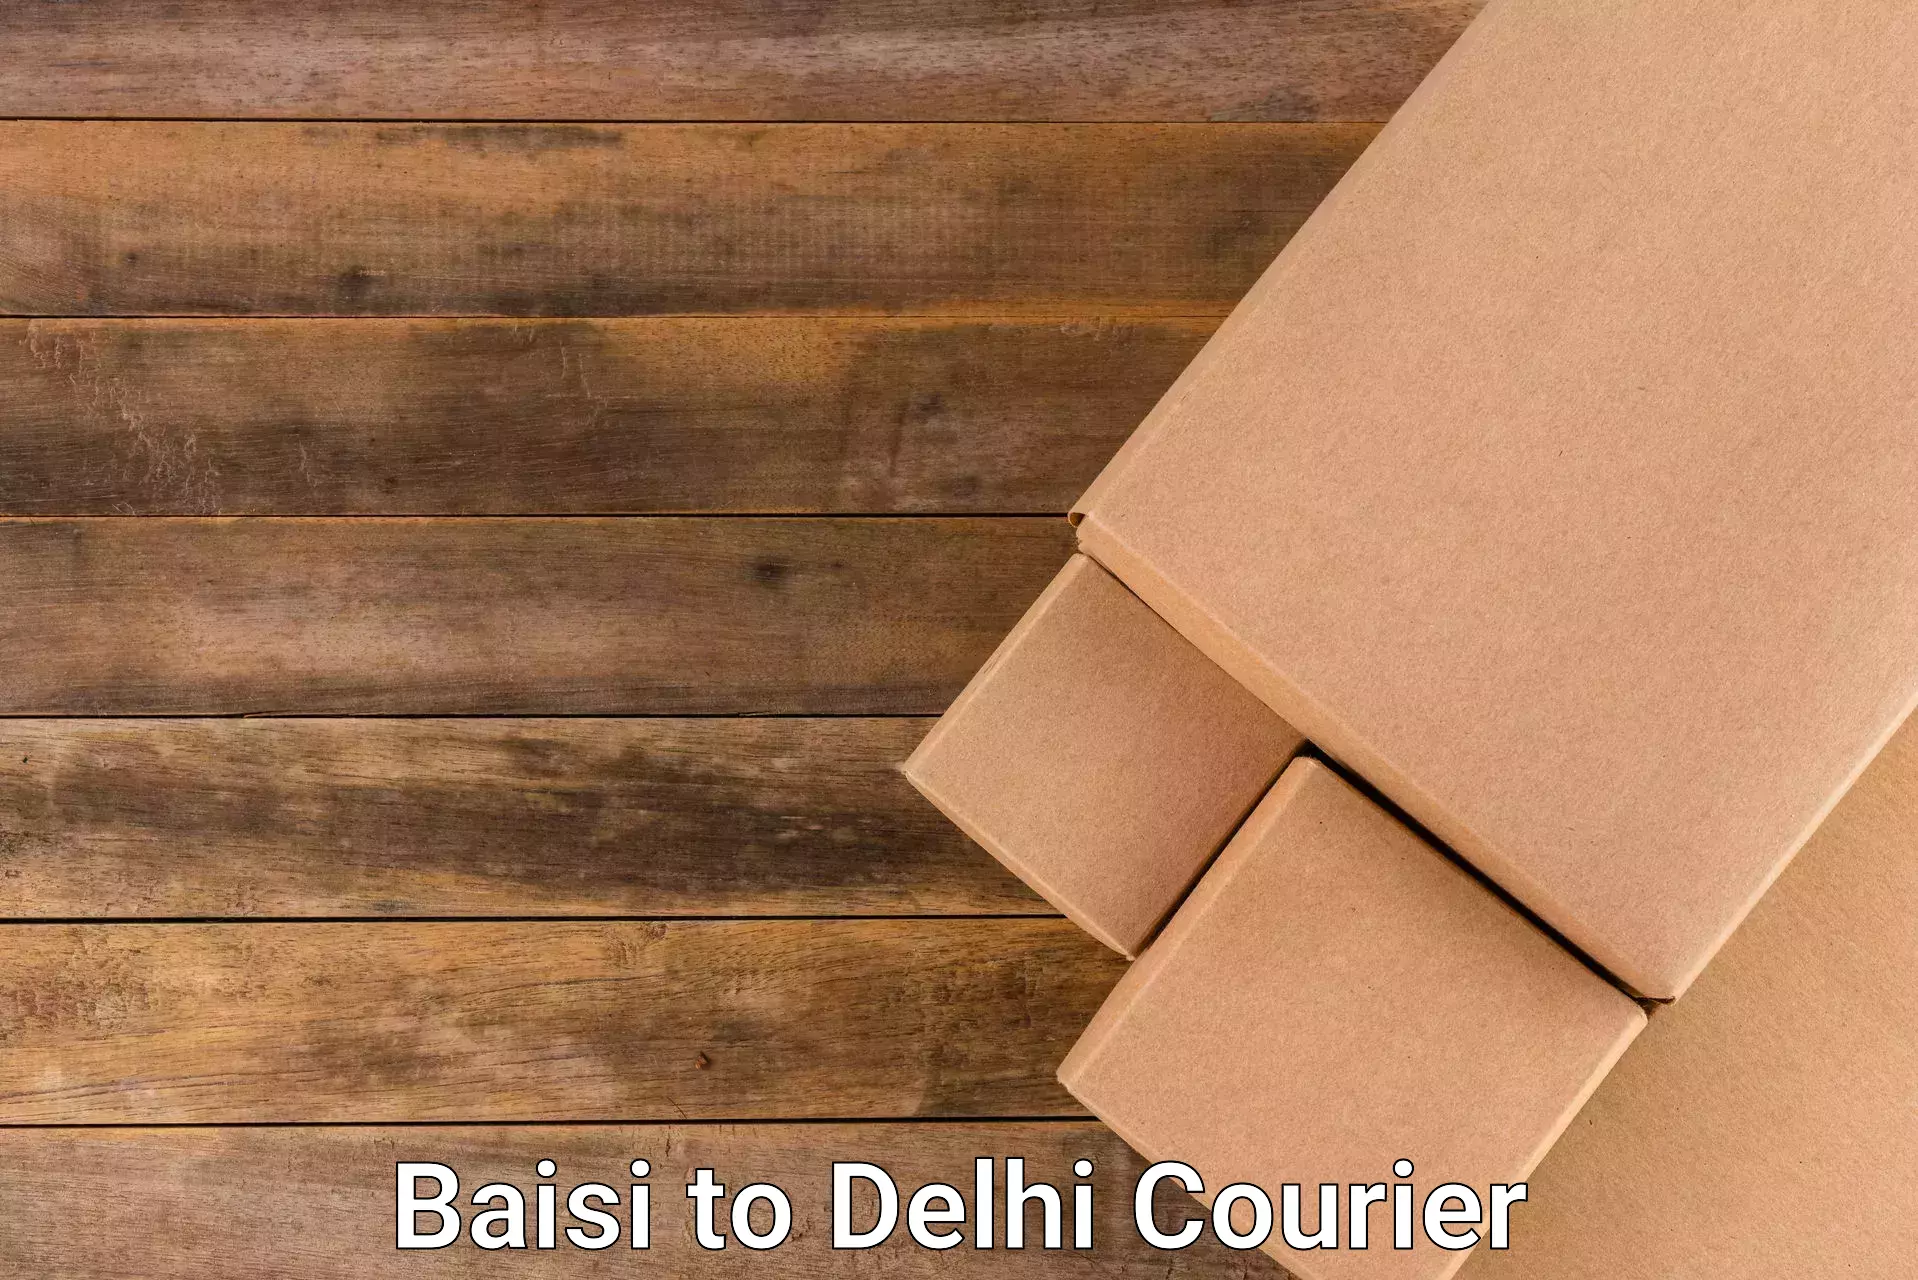 Pharmaceutical courier Baisi to Delhi